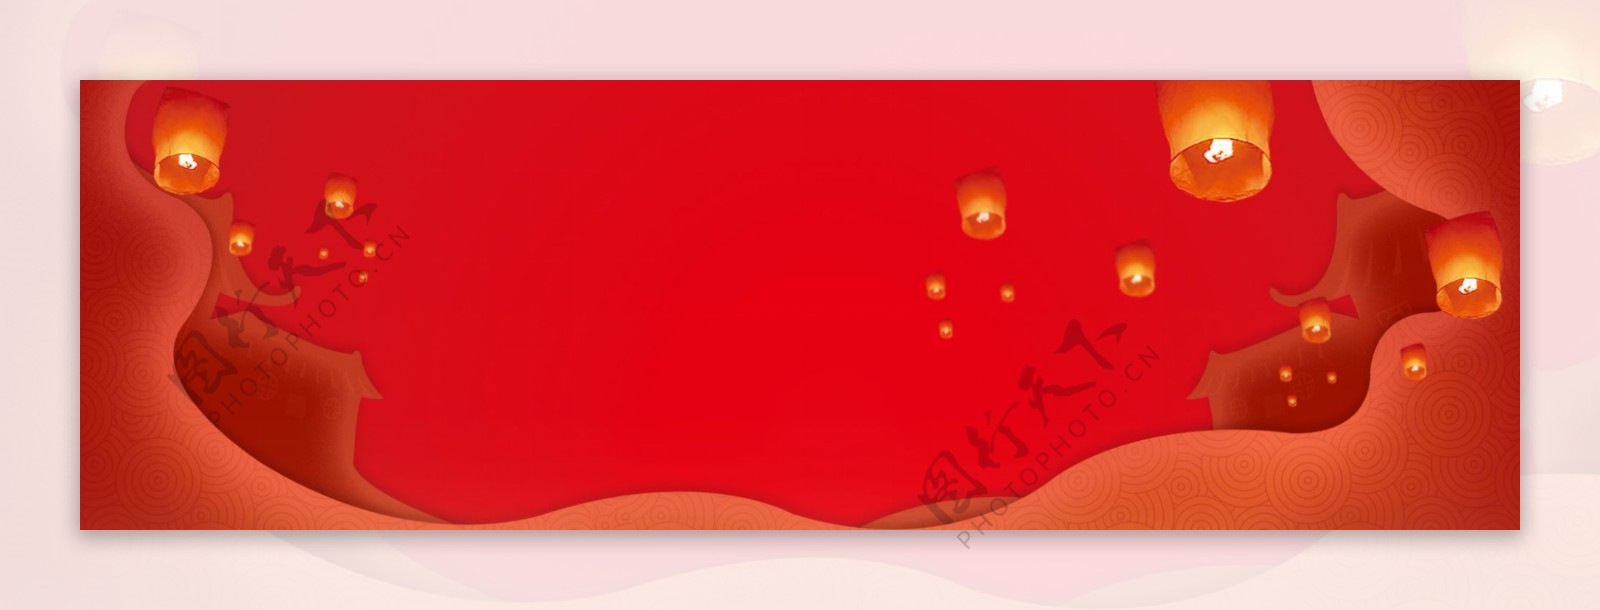 红色孔明灯春节舞台背景素材